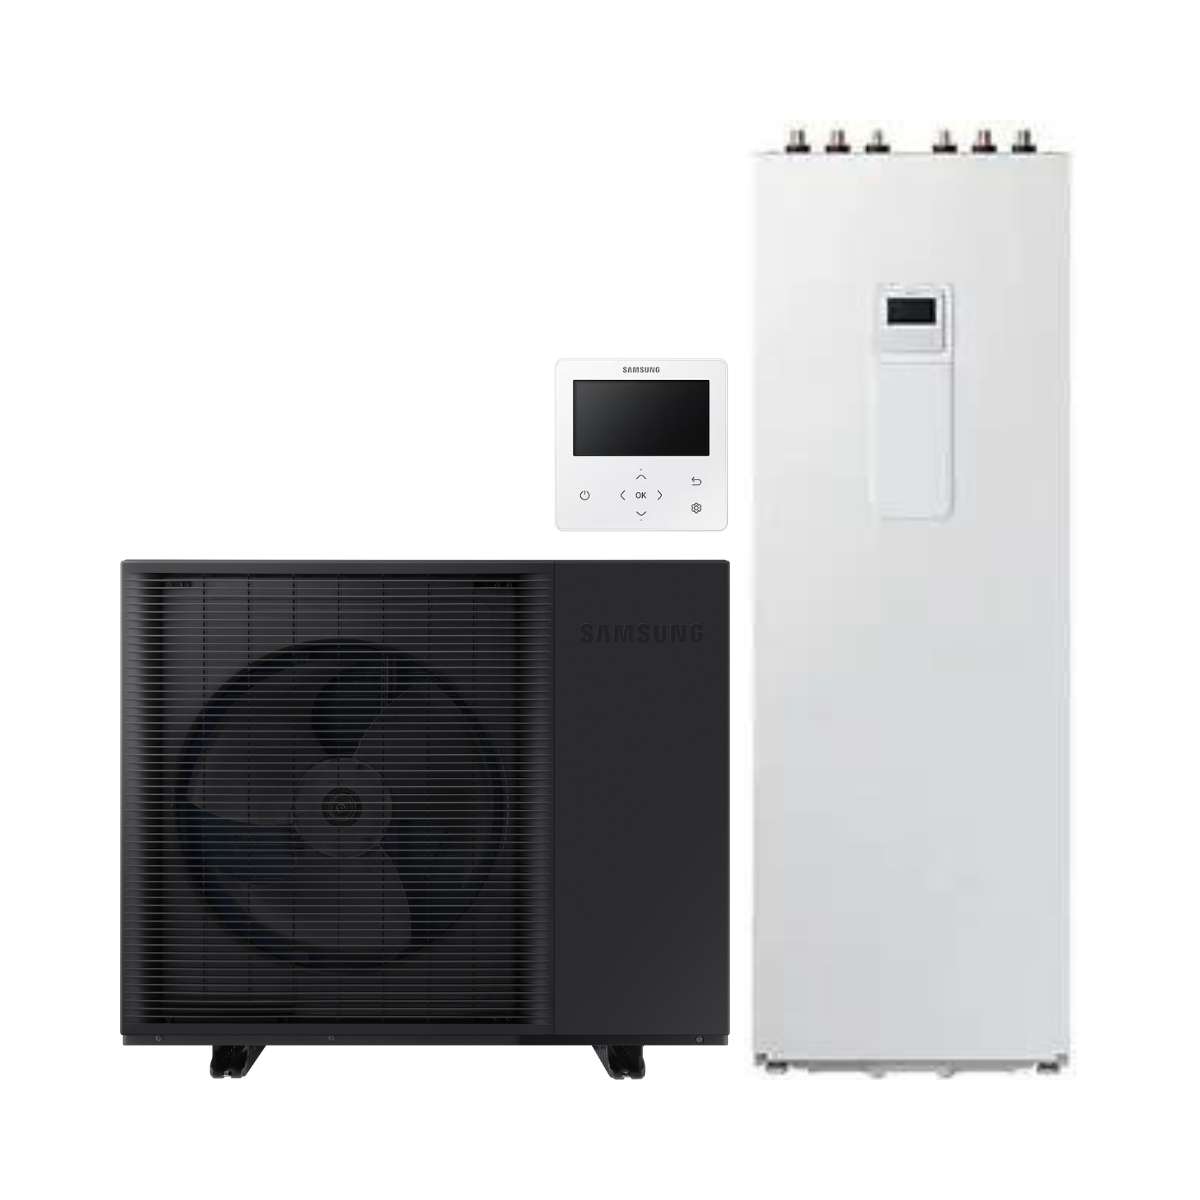 Set pompa di calore monoblocco Samsung EHS HT 14 kW + ClimateHub da 260 litri con riferimento KITSAMEHSHT14+260 del marchio SAMSUNG